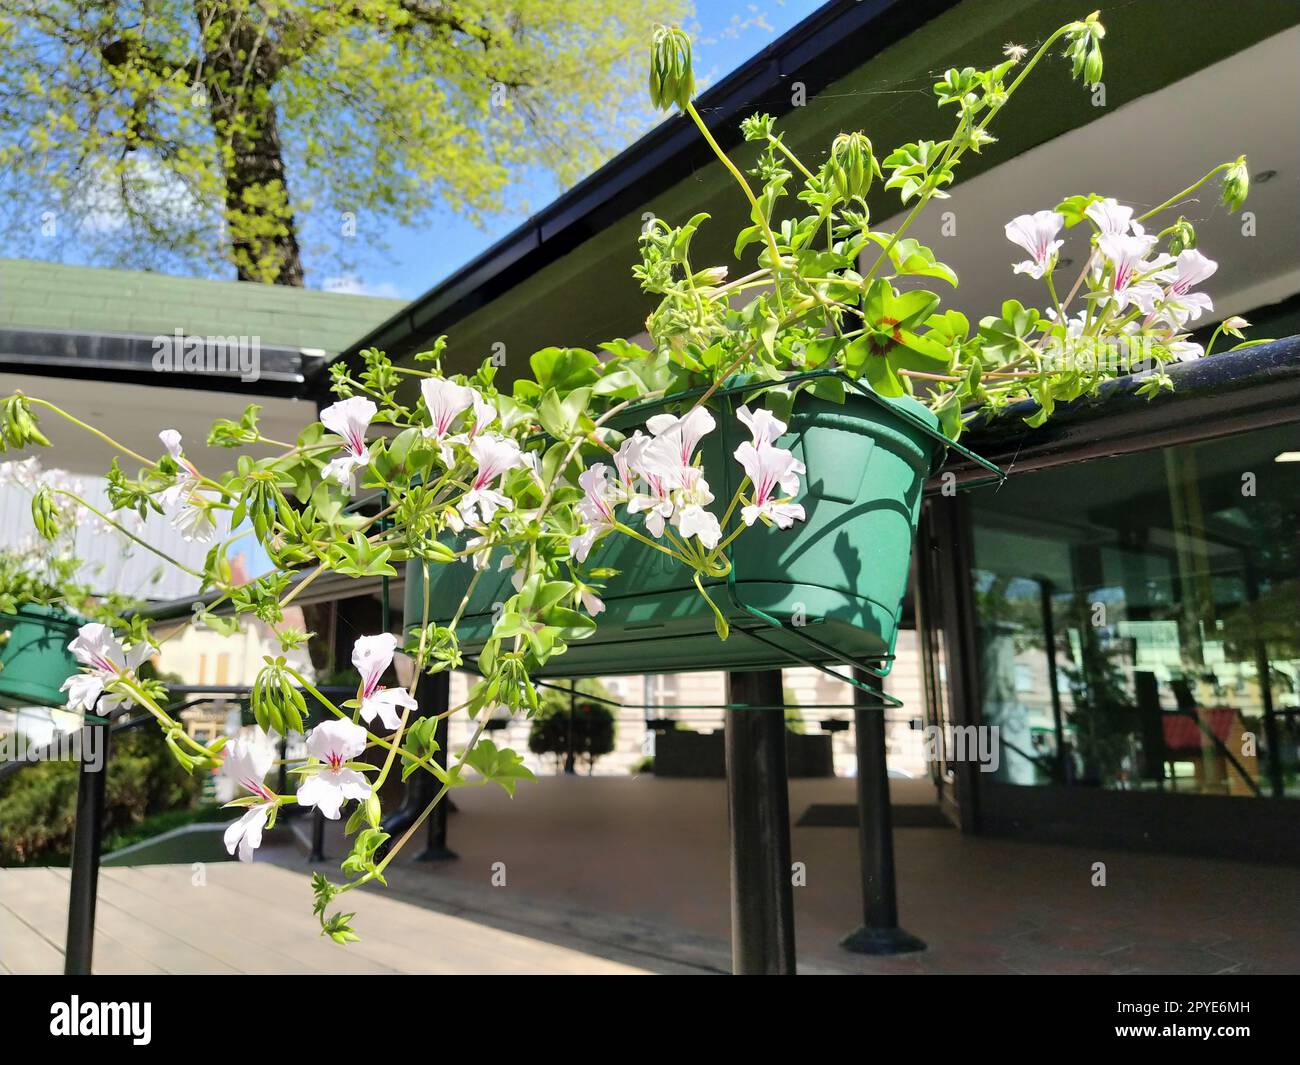 Pelargonium è un genere di piante della famiglia Geraniumaceae. Geranio ivy bianco con vene rosse su petali. Scatola di fiori. Decorazioni di balconi, finestre, facciate di case, strade, prati. Cranesbill. Foto Stock